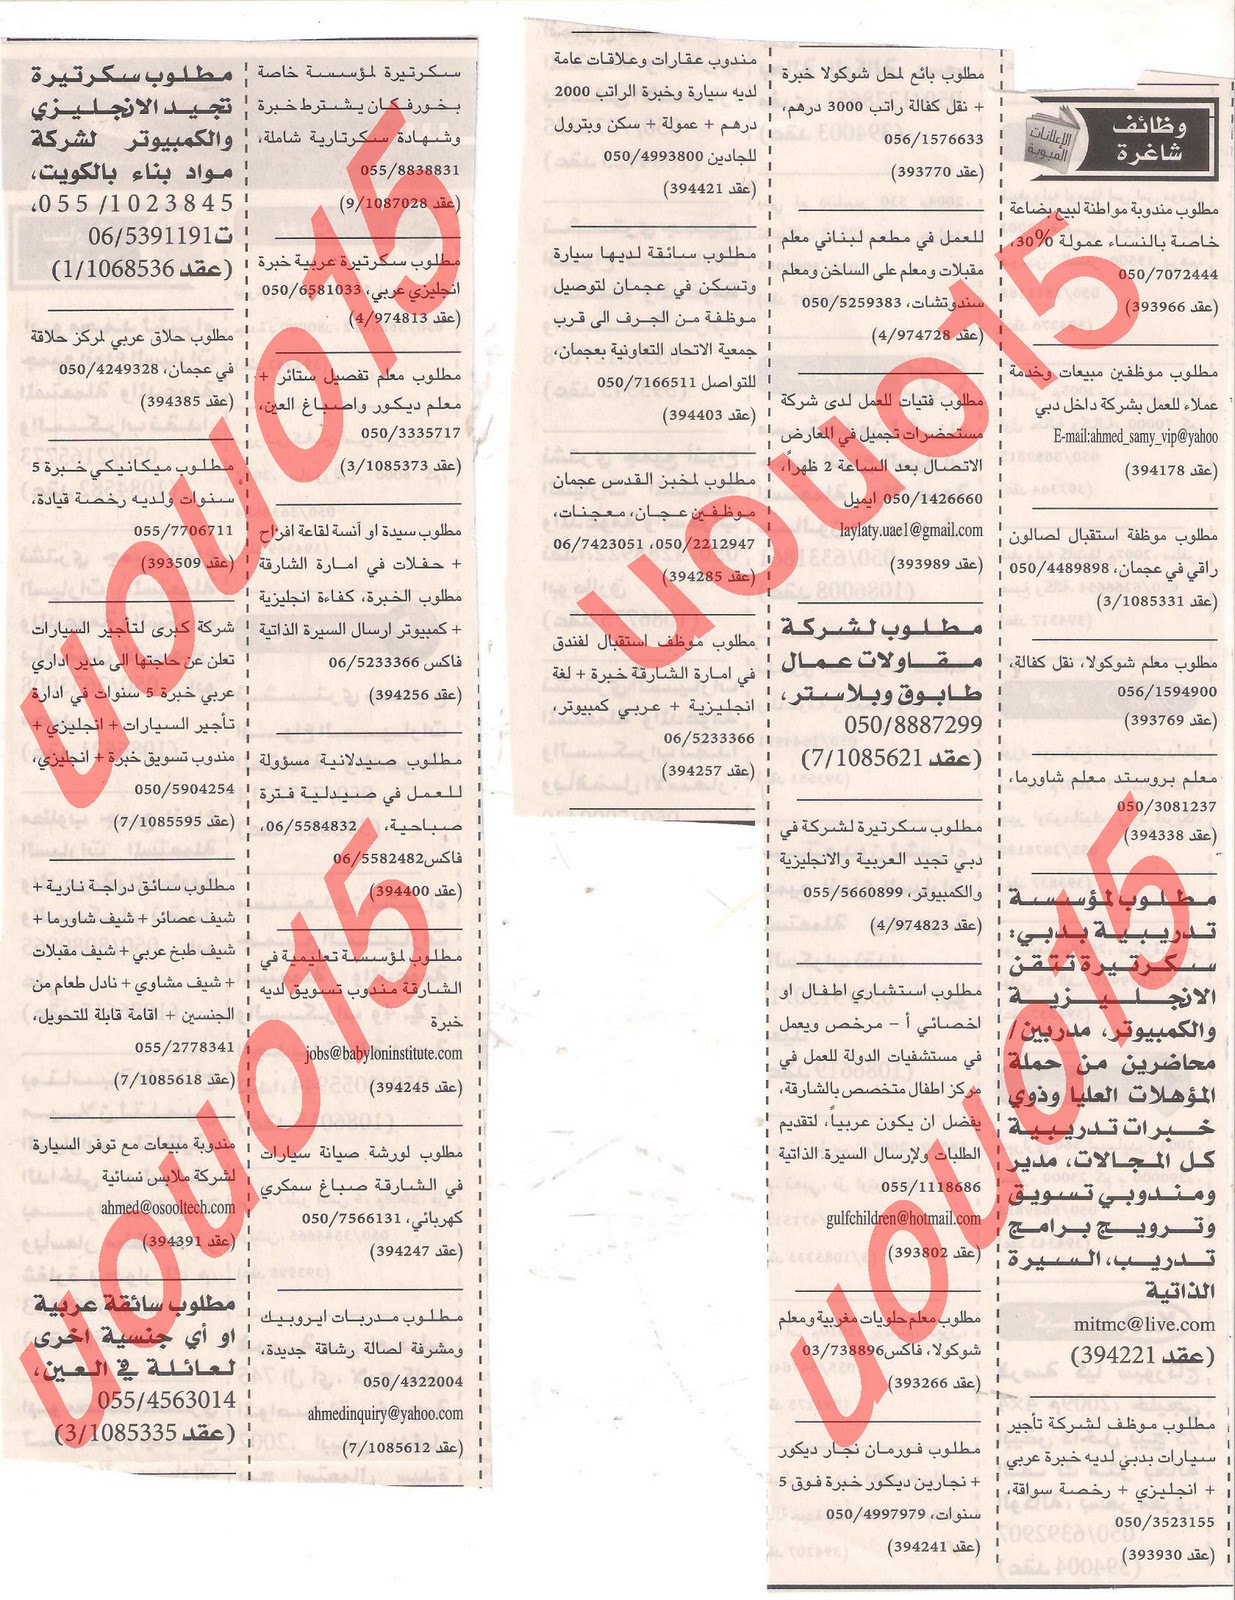 اعلانات الوظائف من جريدة الخليج الاحد 1 يناير 2012  Picture+004